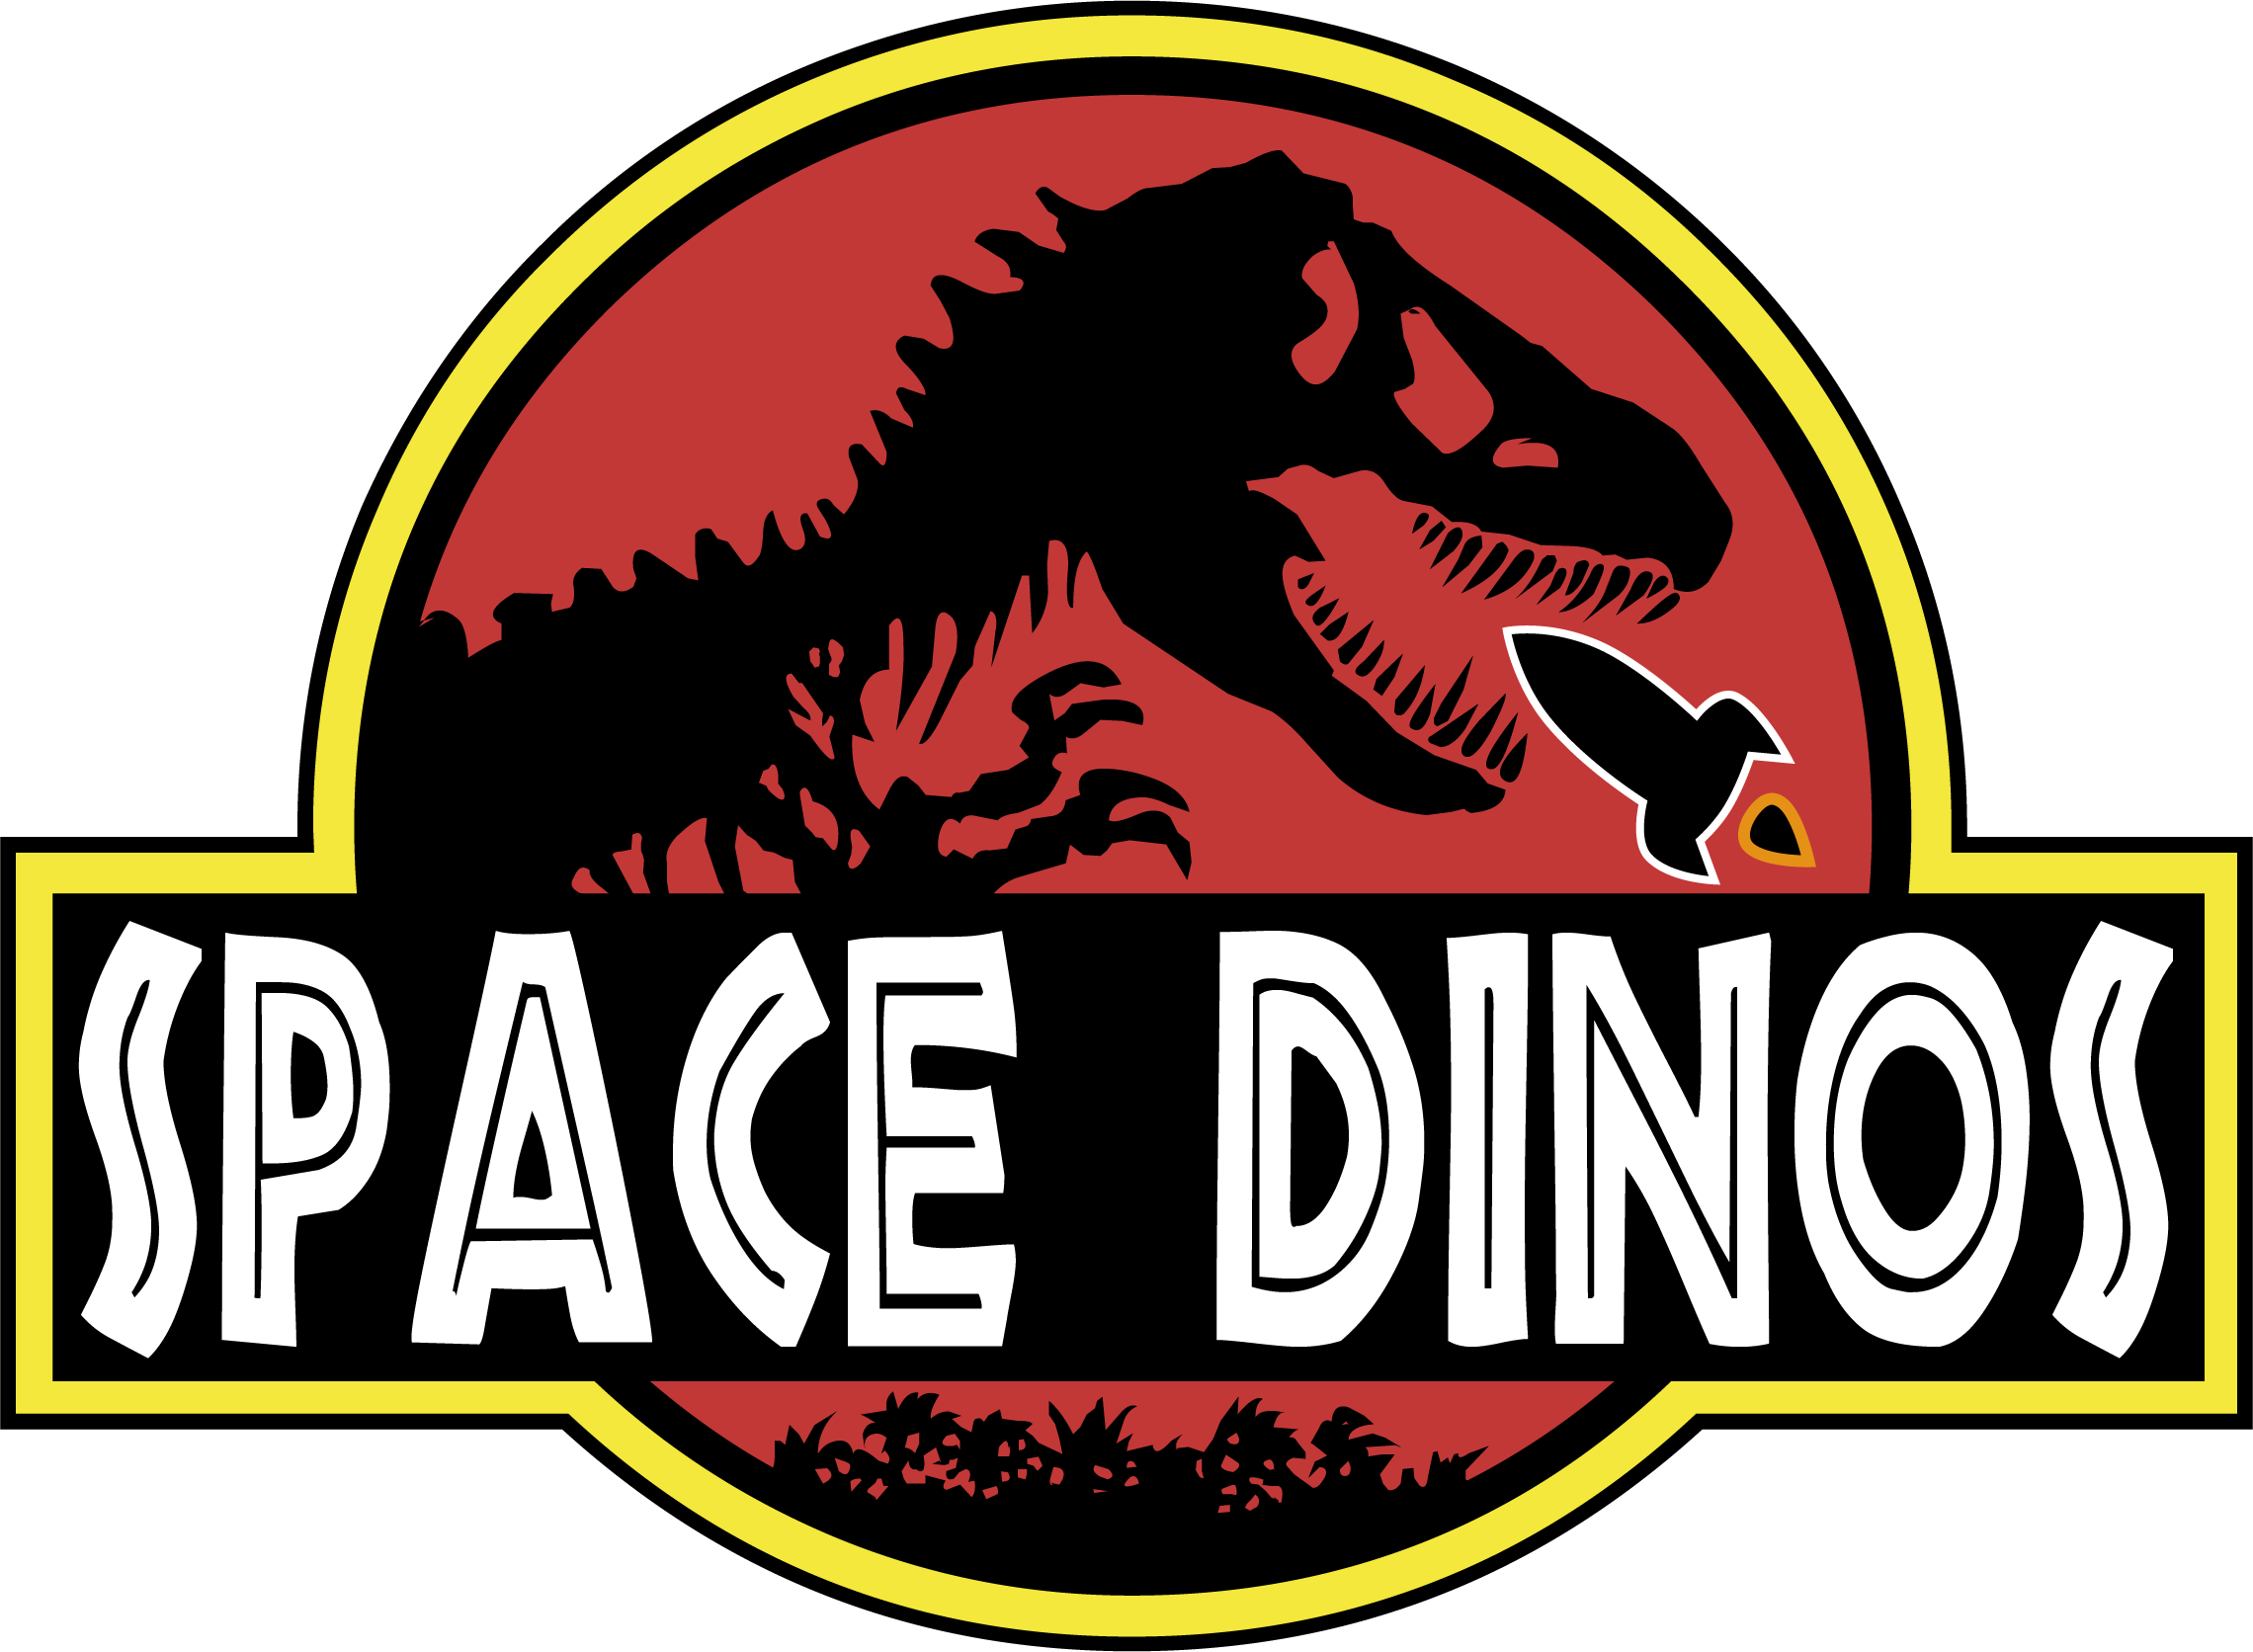 Space Dinos